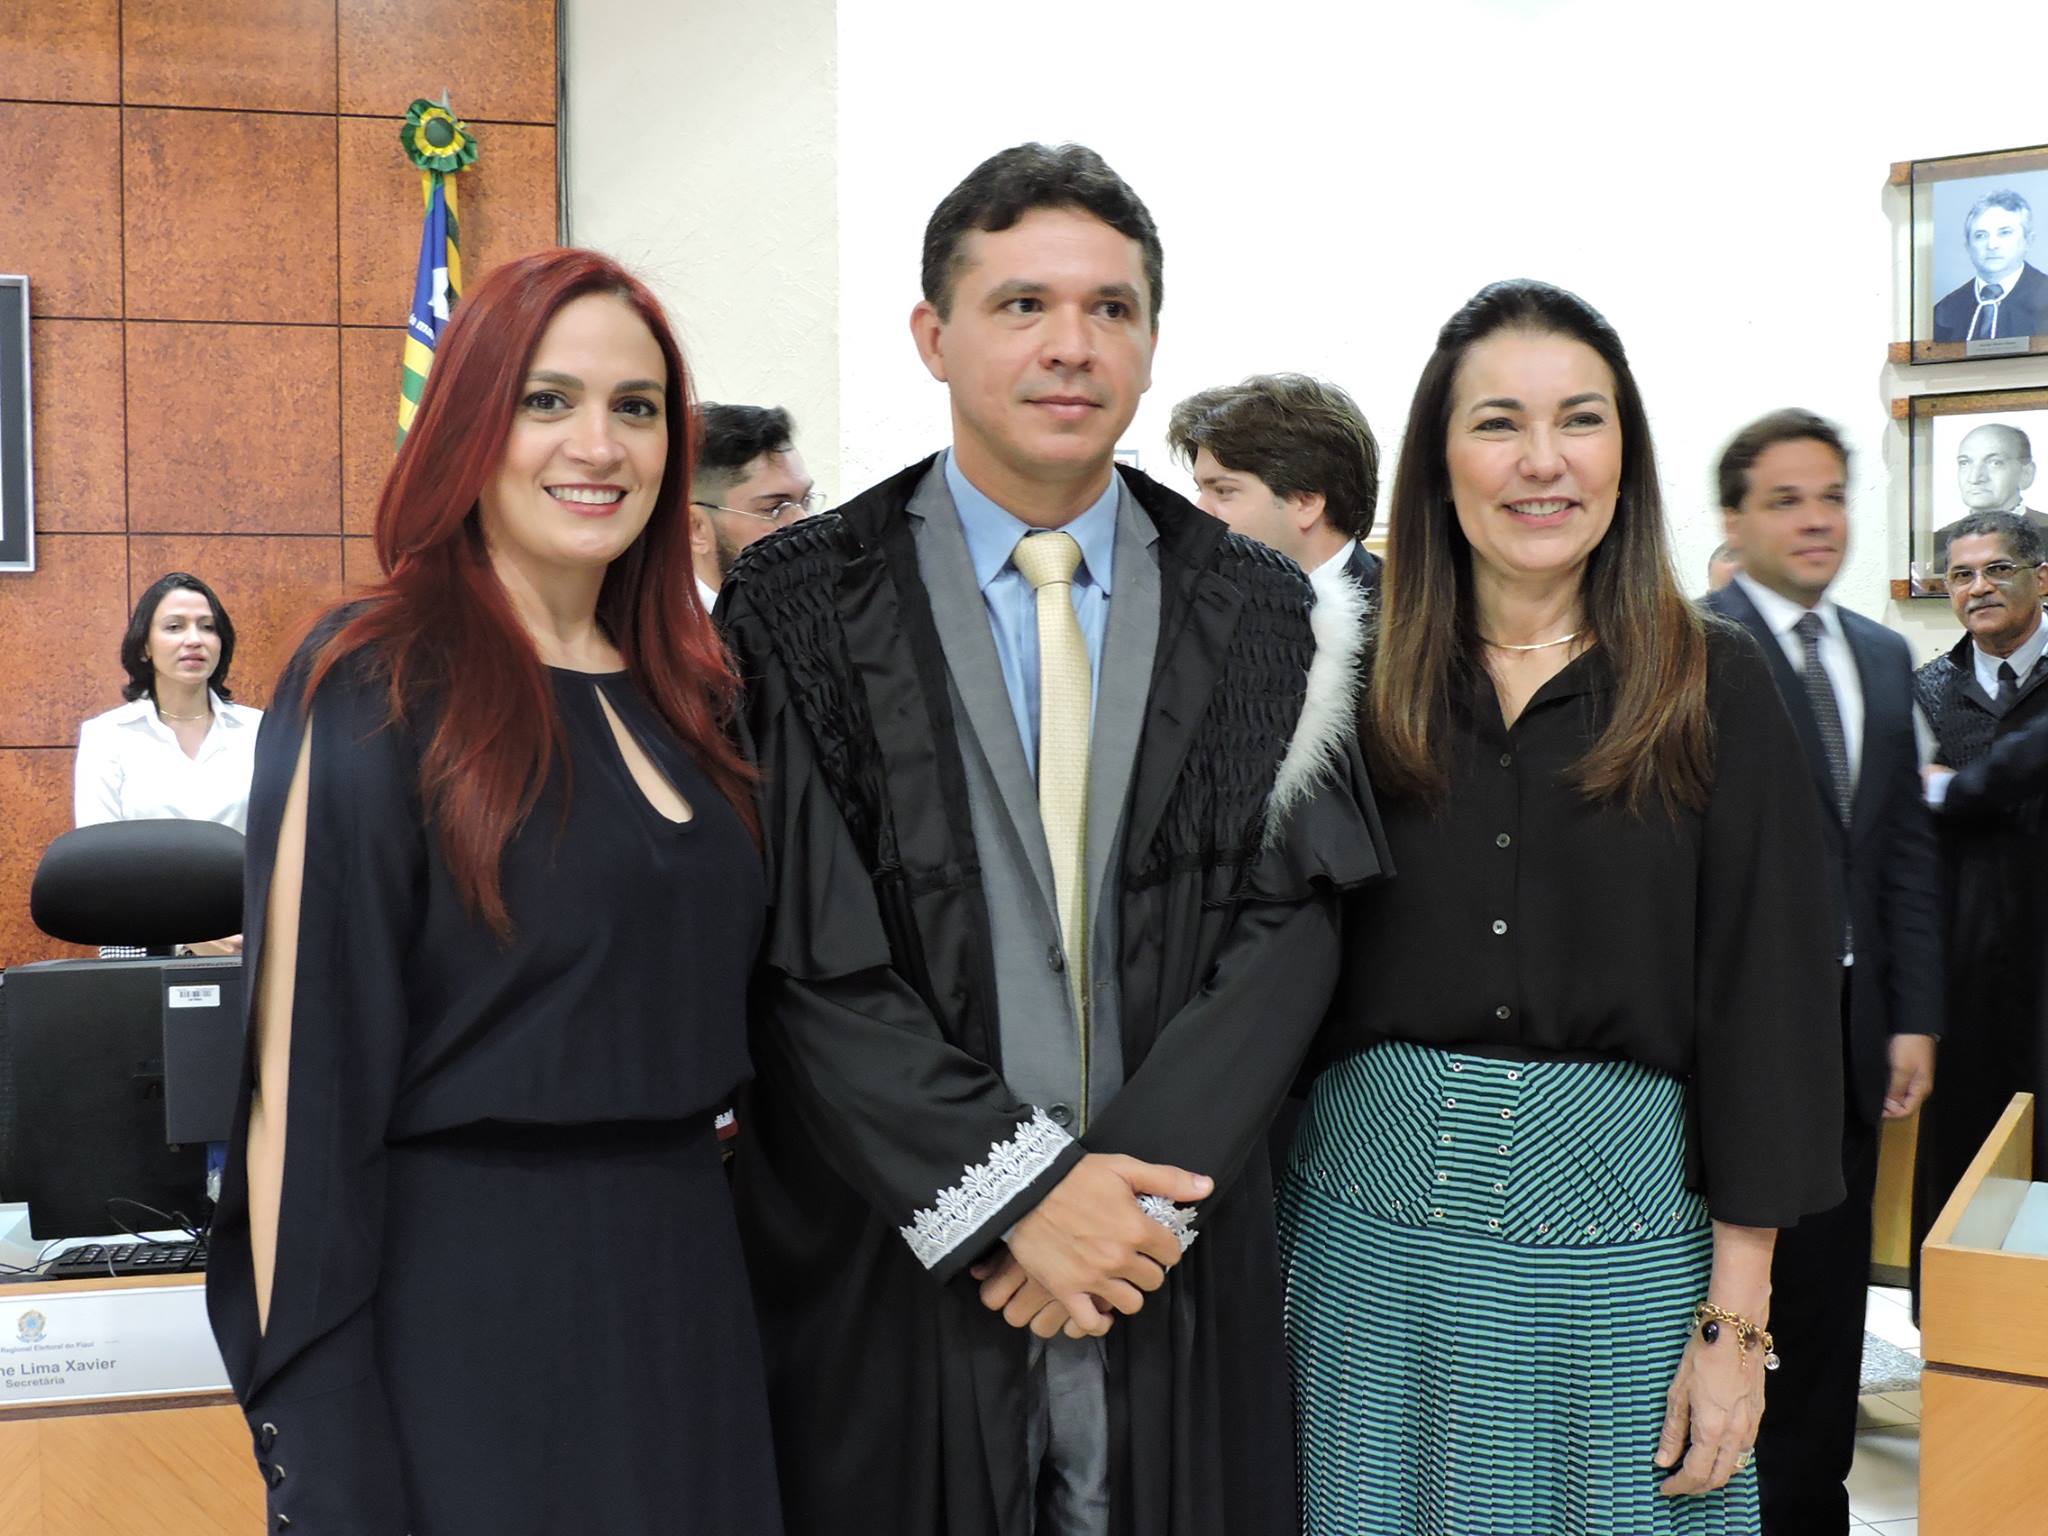 A procuradora de Teresina Georgia Nunes, Astrogildo Assunção e Margarete Coelho